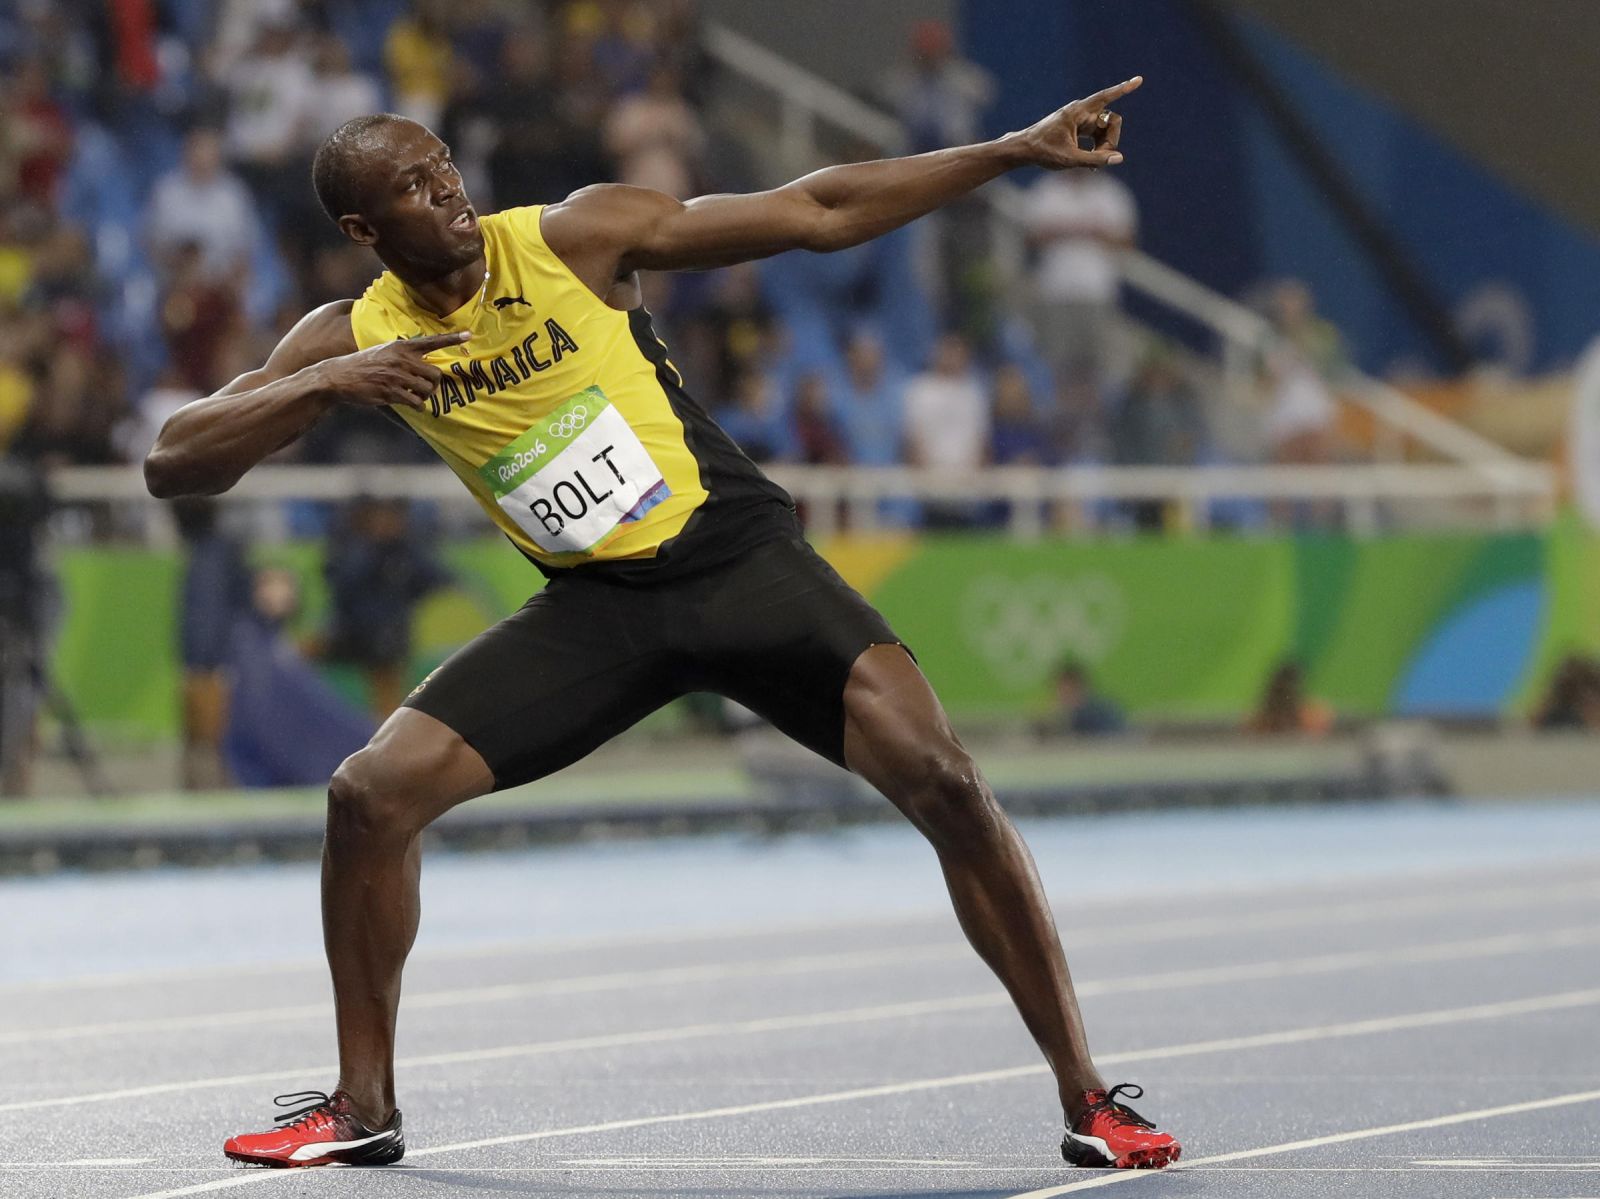 VĐV chạy tốc độ - Usain Bolt 